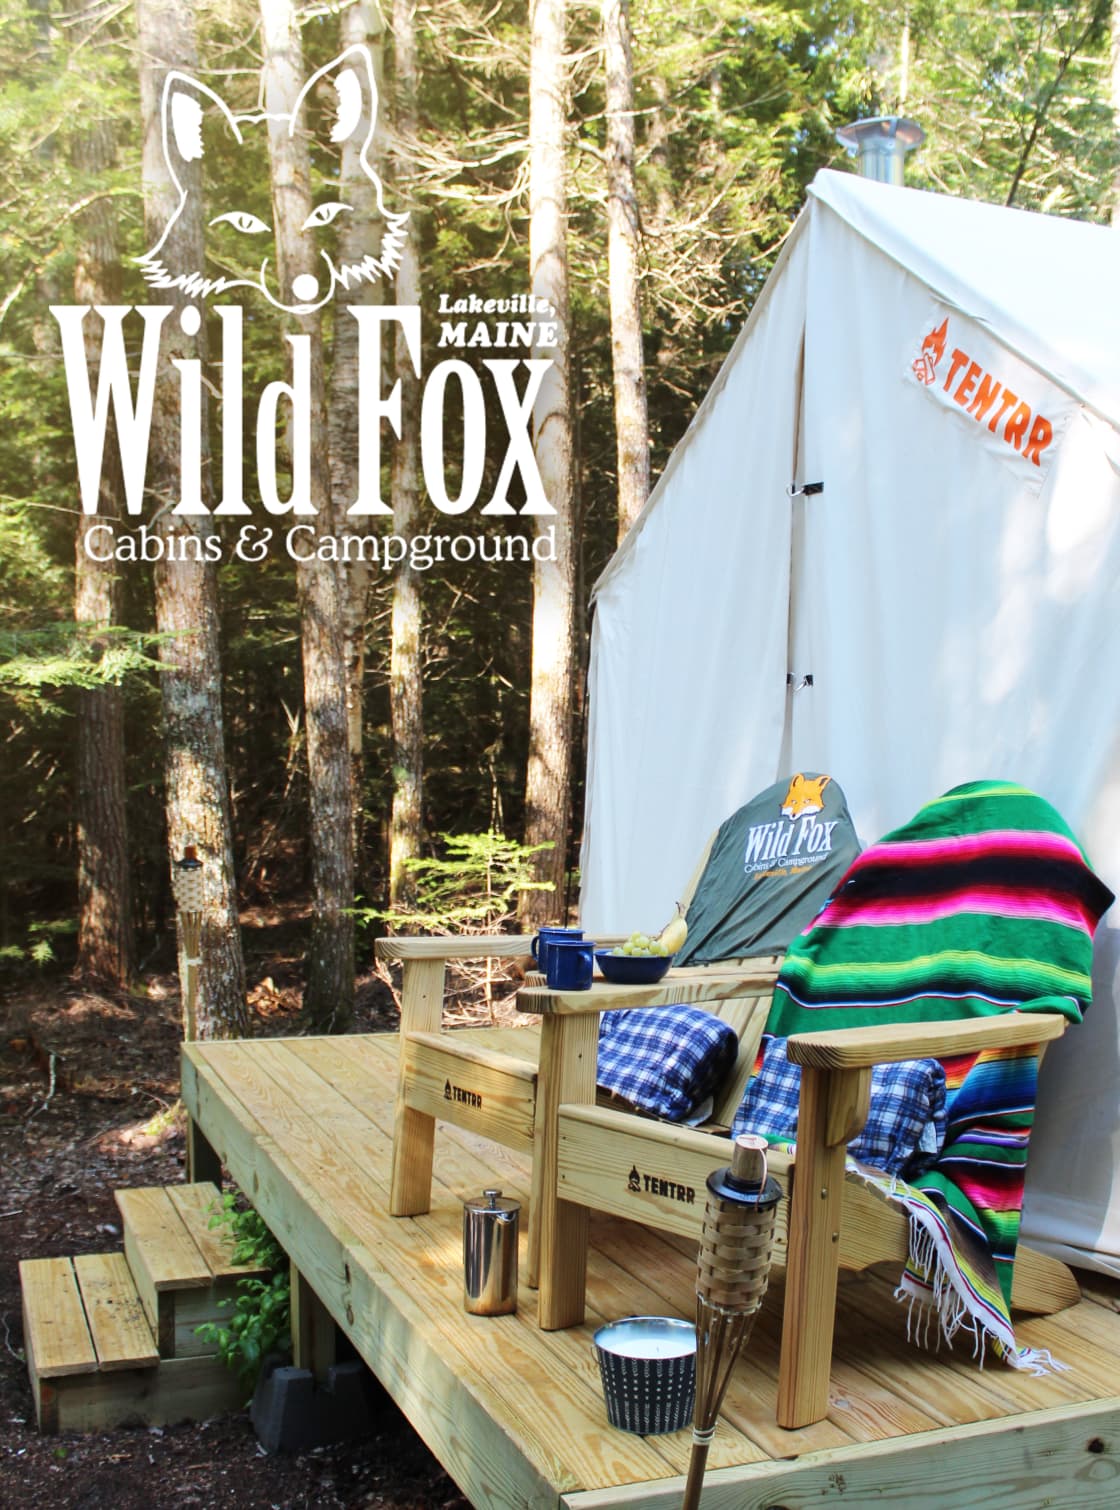 Wild Fox Cabins- The Shoe-Inn